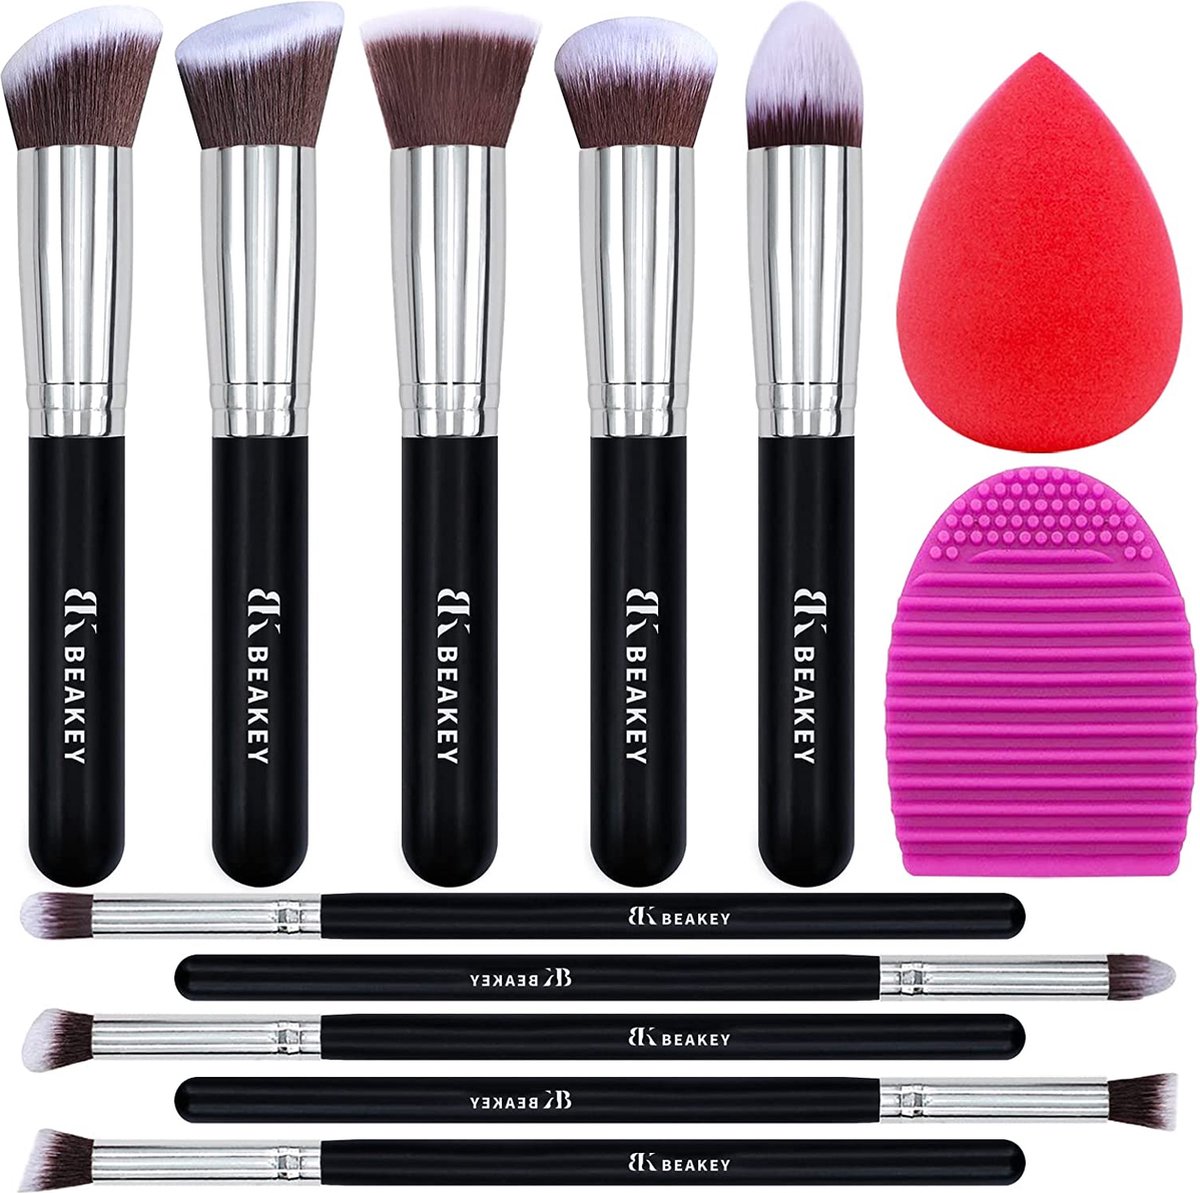 BEAKEY Makeup Brush Set Premium Synthetic Kabuki Foundation Face Powder Blush Eyeshadow Brushes Makeup Brush Kit met Blender Spons en Brush Egg (10 + 2 stuks, Zwart/Zilver)